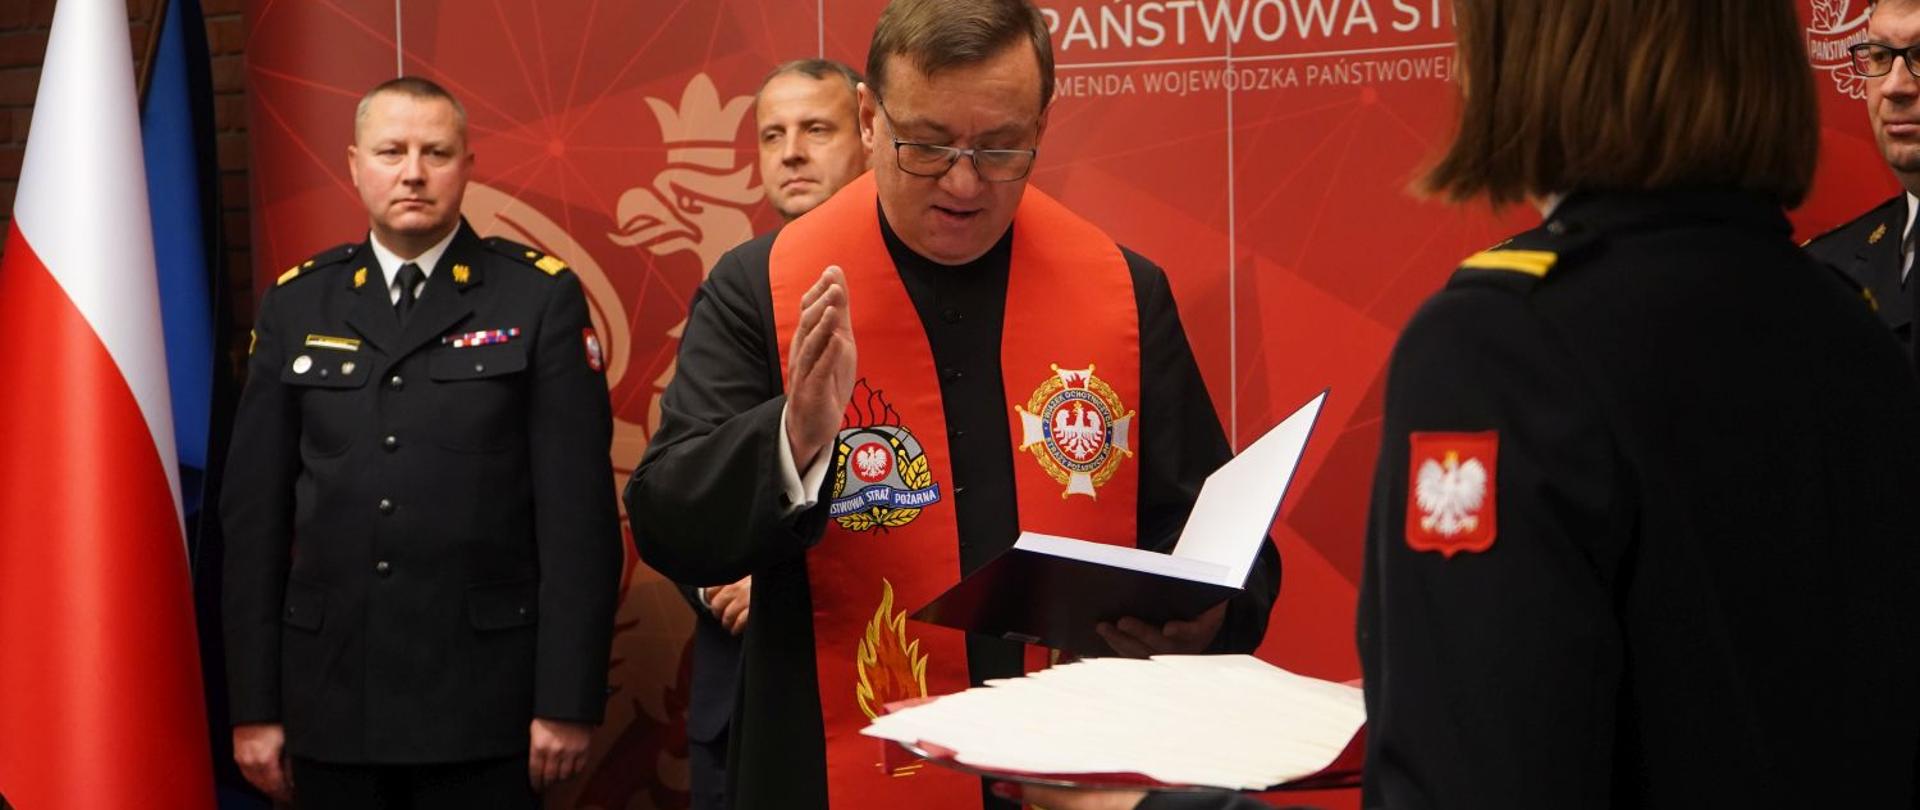 kapelan wielkopolskich strażaków świeci opłatki